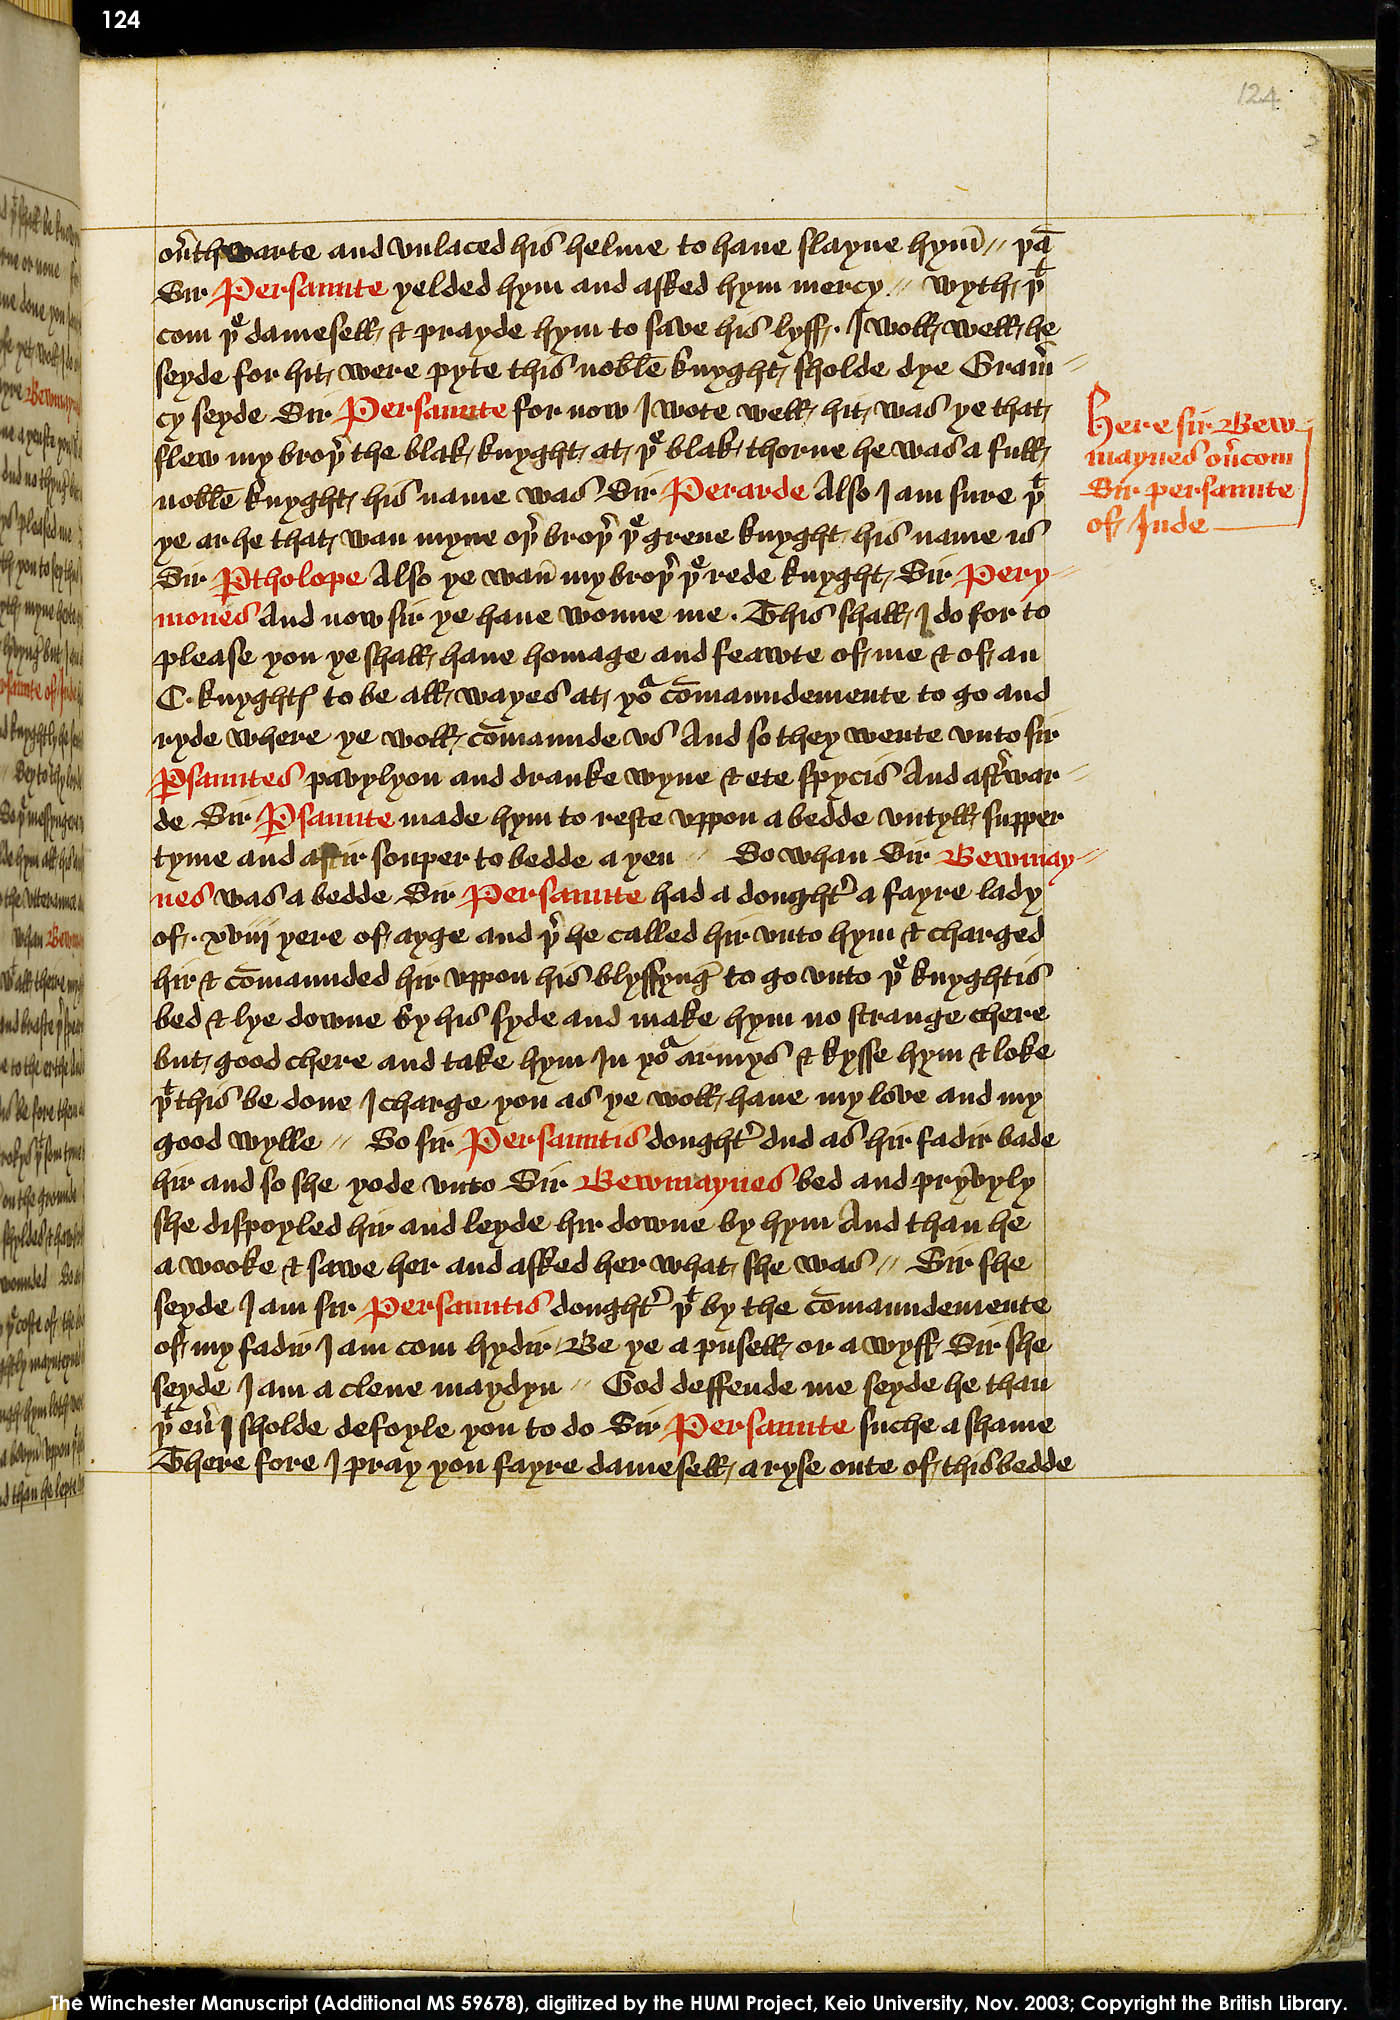 Folio 124r